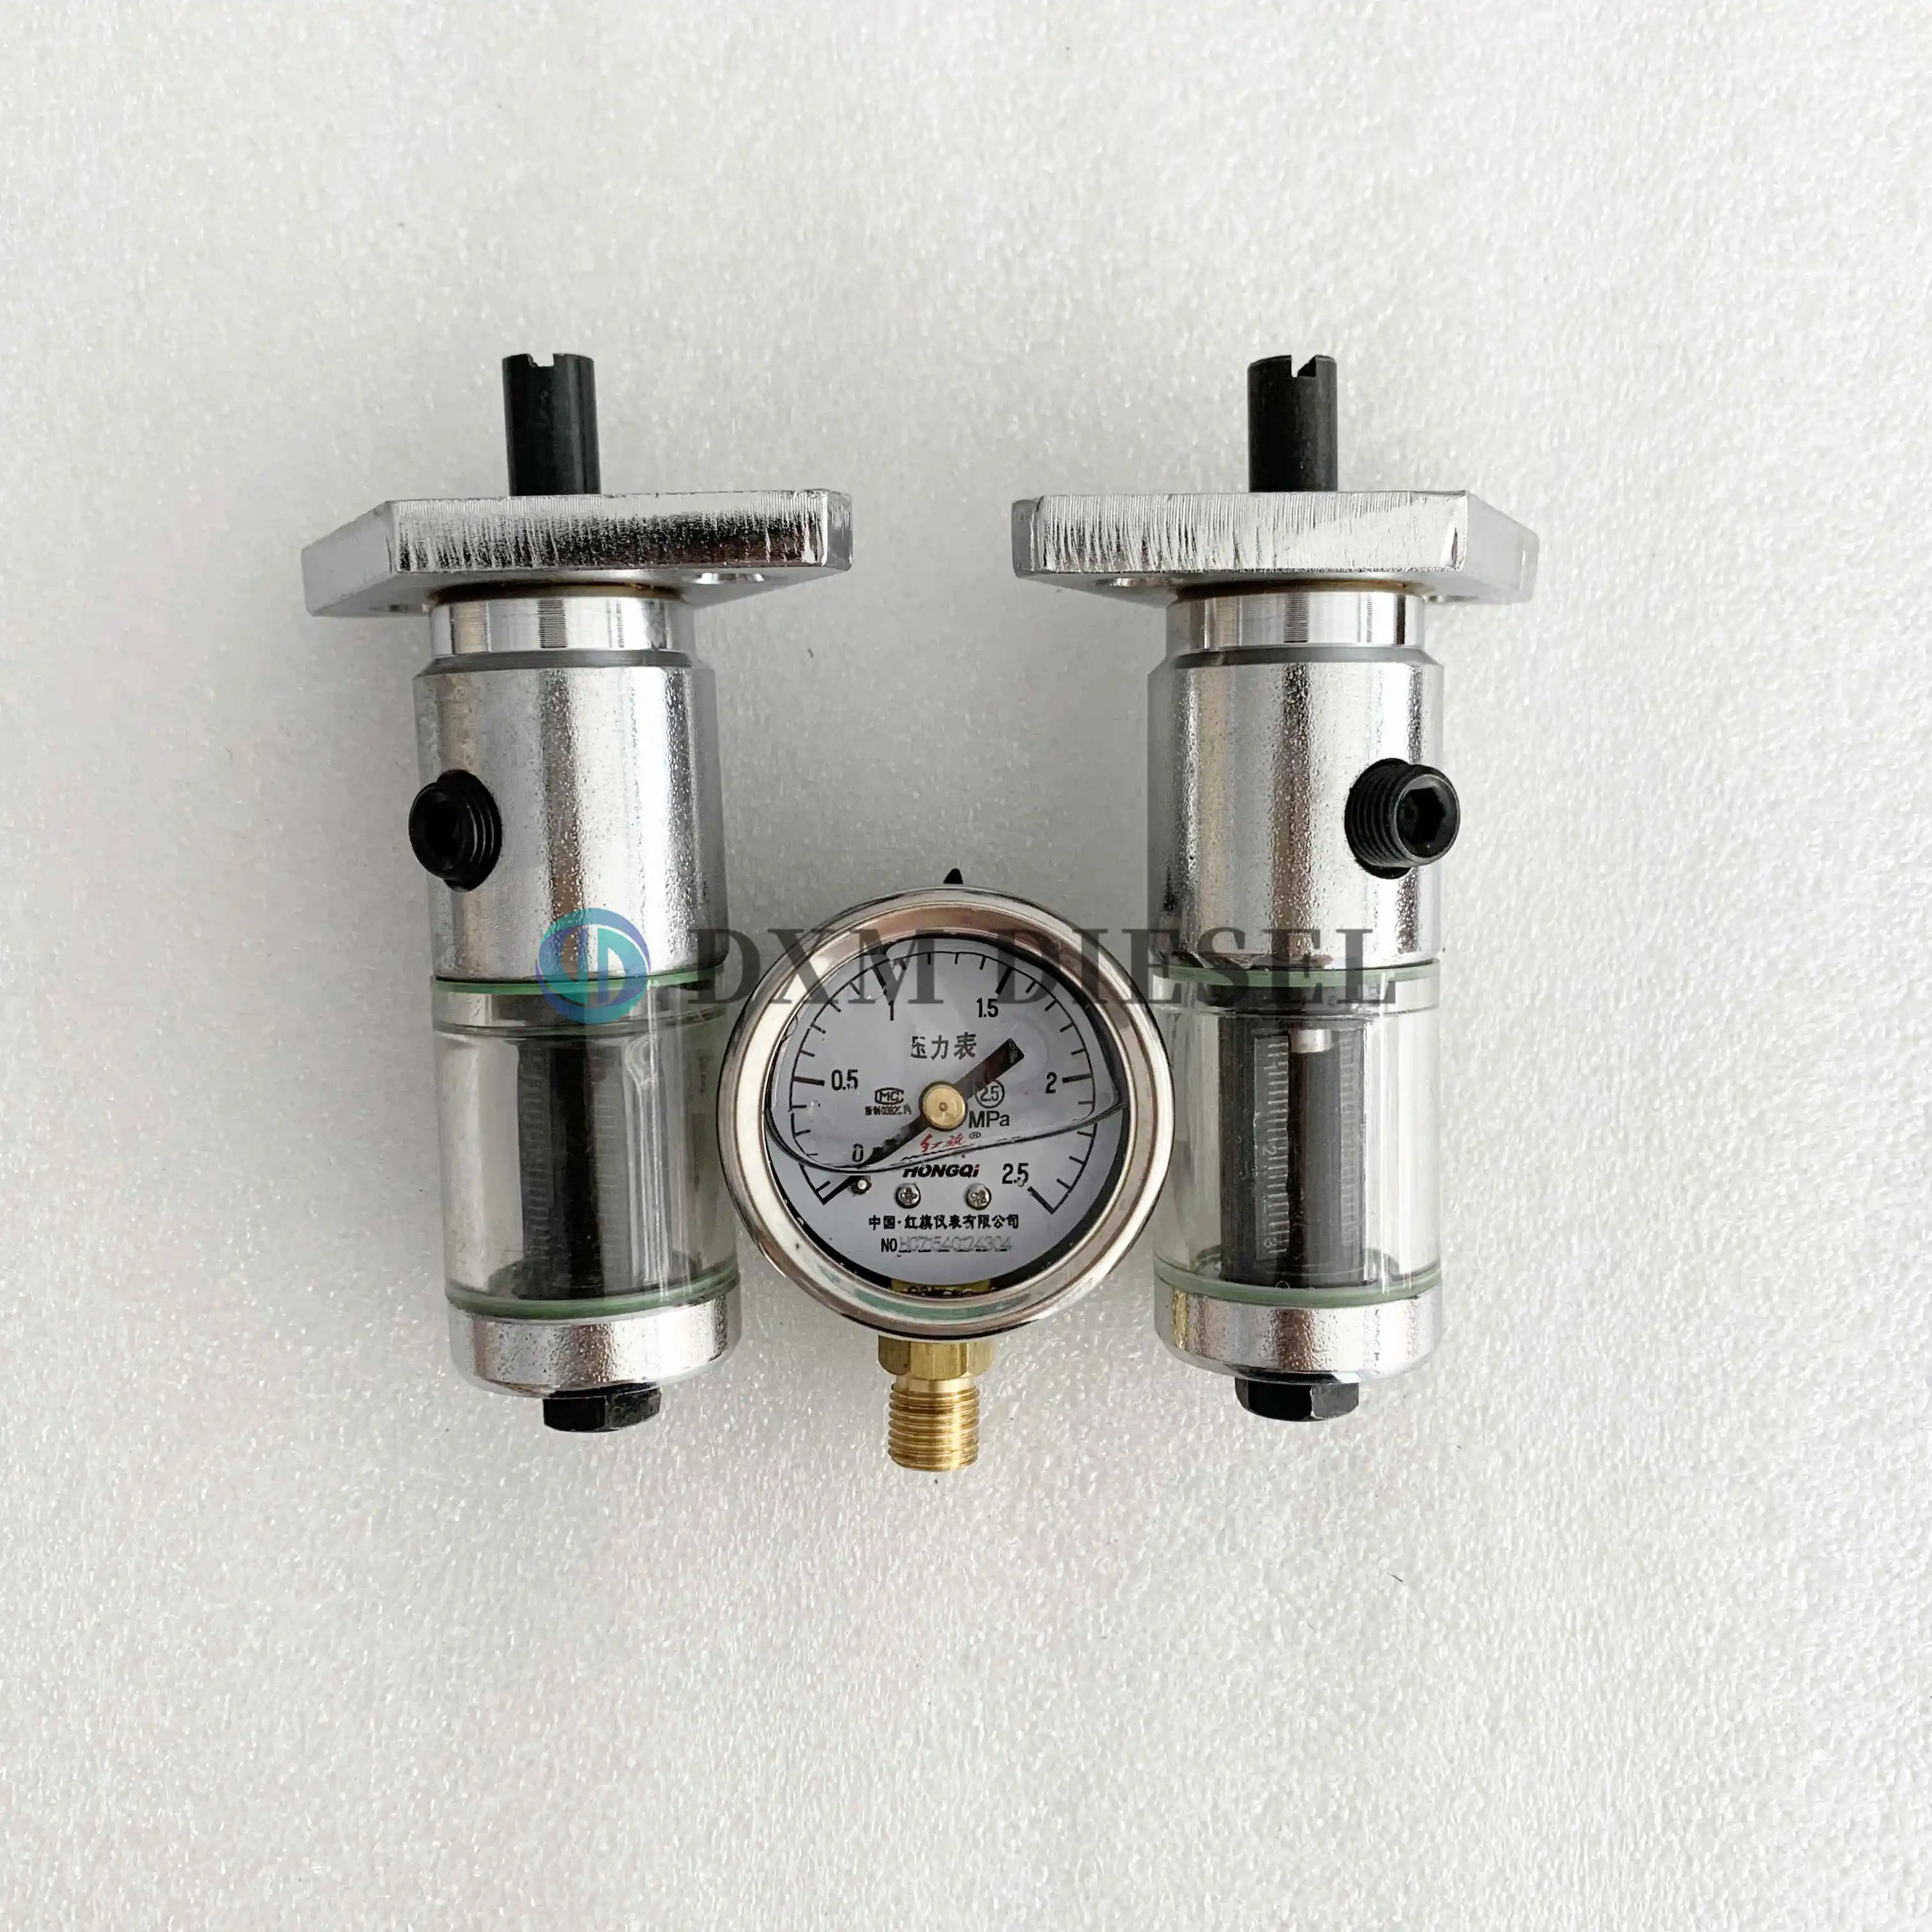 

Diesel VE Pump Piston Travel Tester Stroke Gauge with 2.5Mpa Pressure Meter, Fuel Pump Internal Pressure Meausring Tool DXM-588